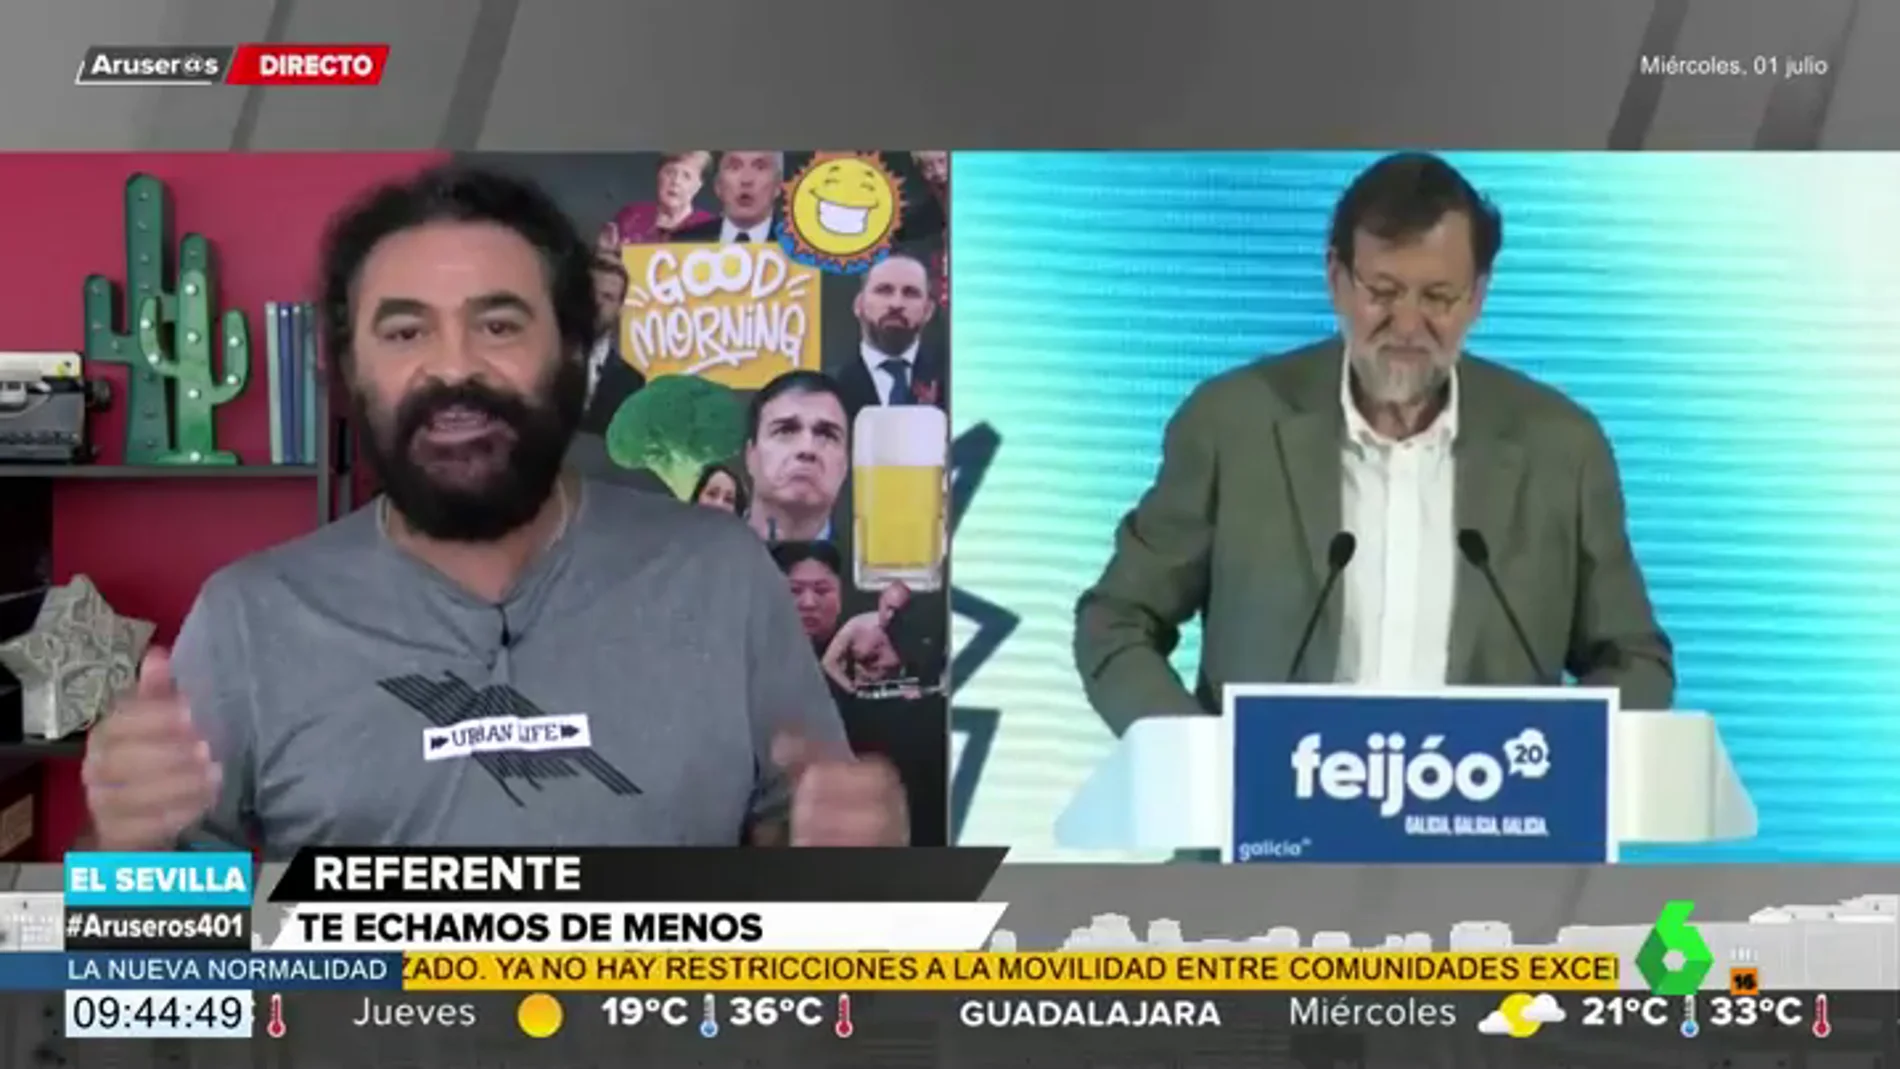 El Sevilla comenta la nueva frase 'célebre' de Rajoy: